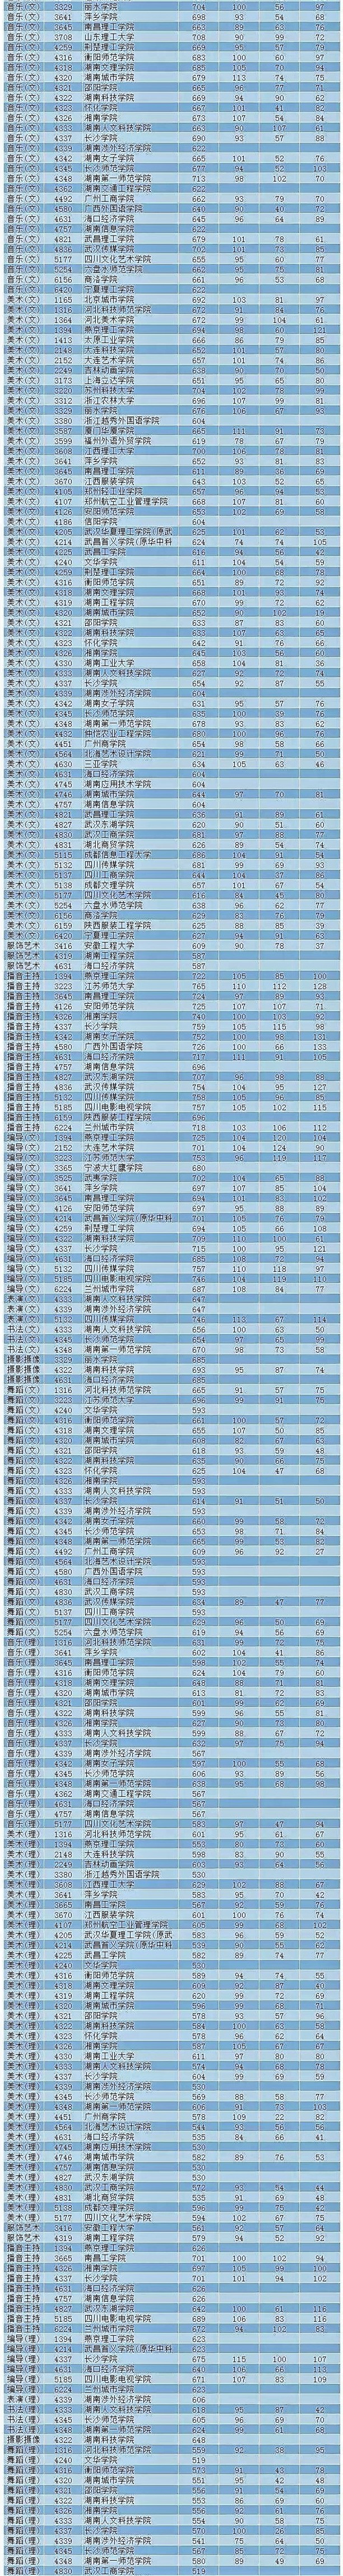 2018年湖南省普通高校招生本科二批艺术类平行投档分数线